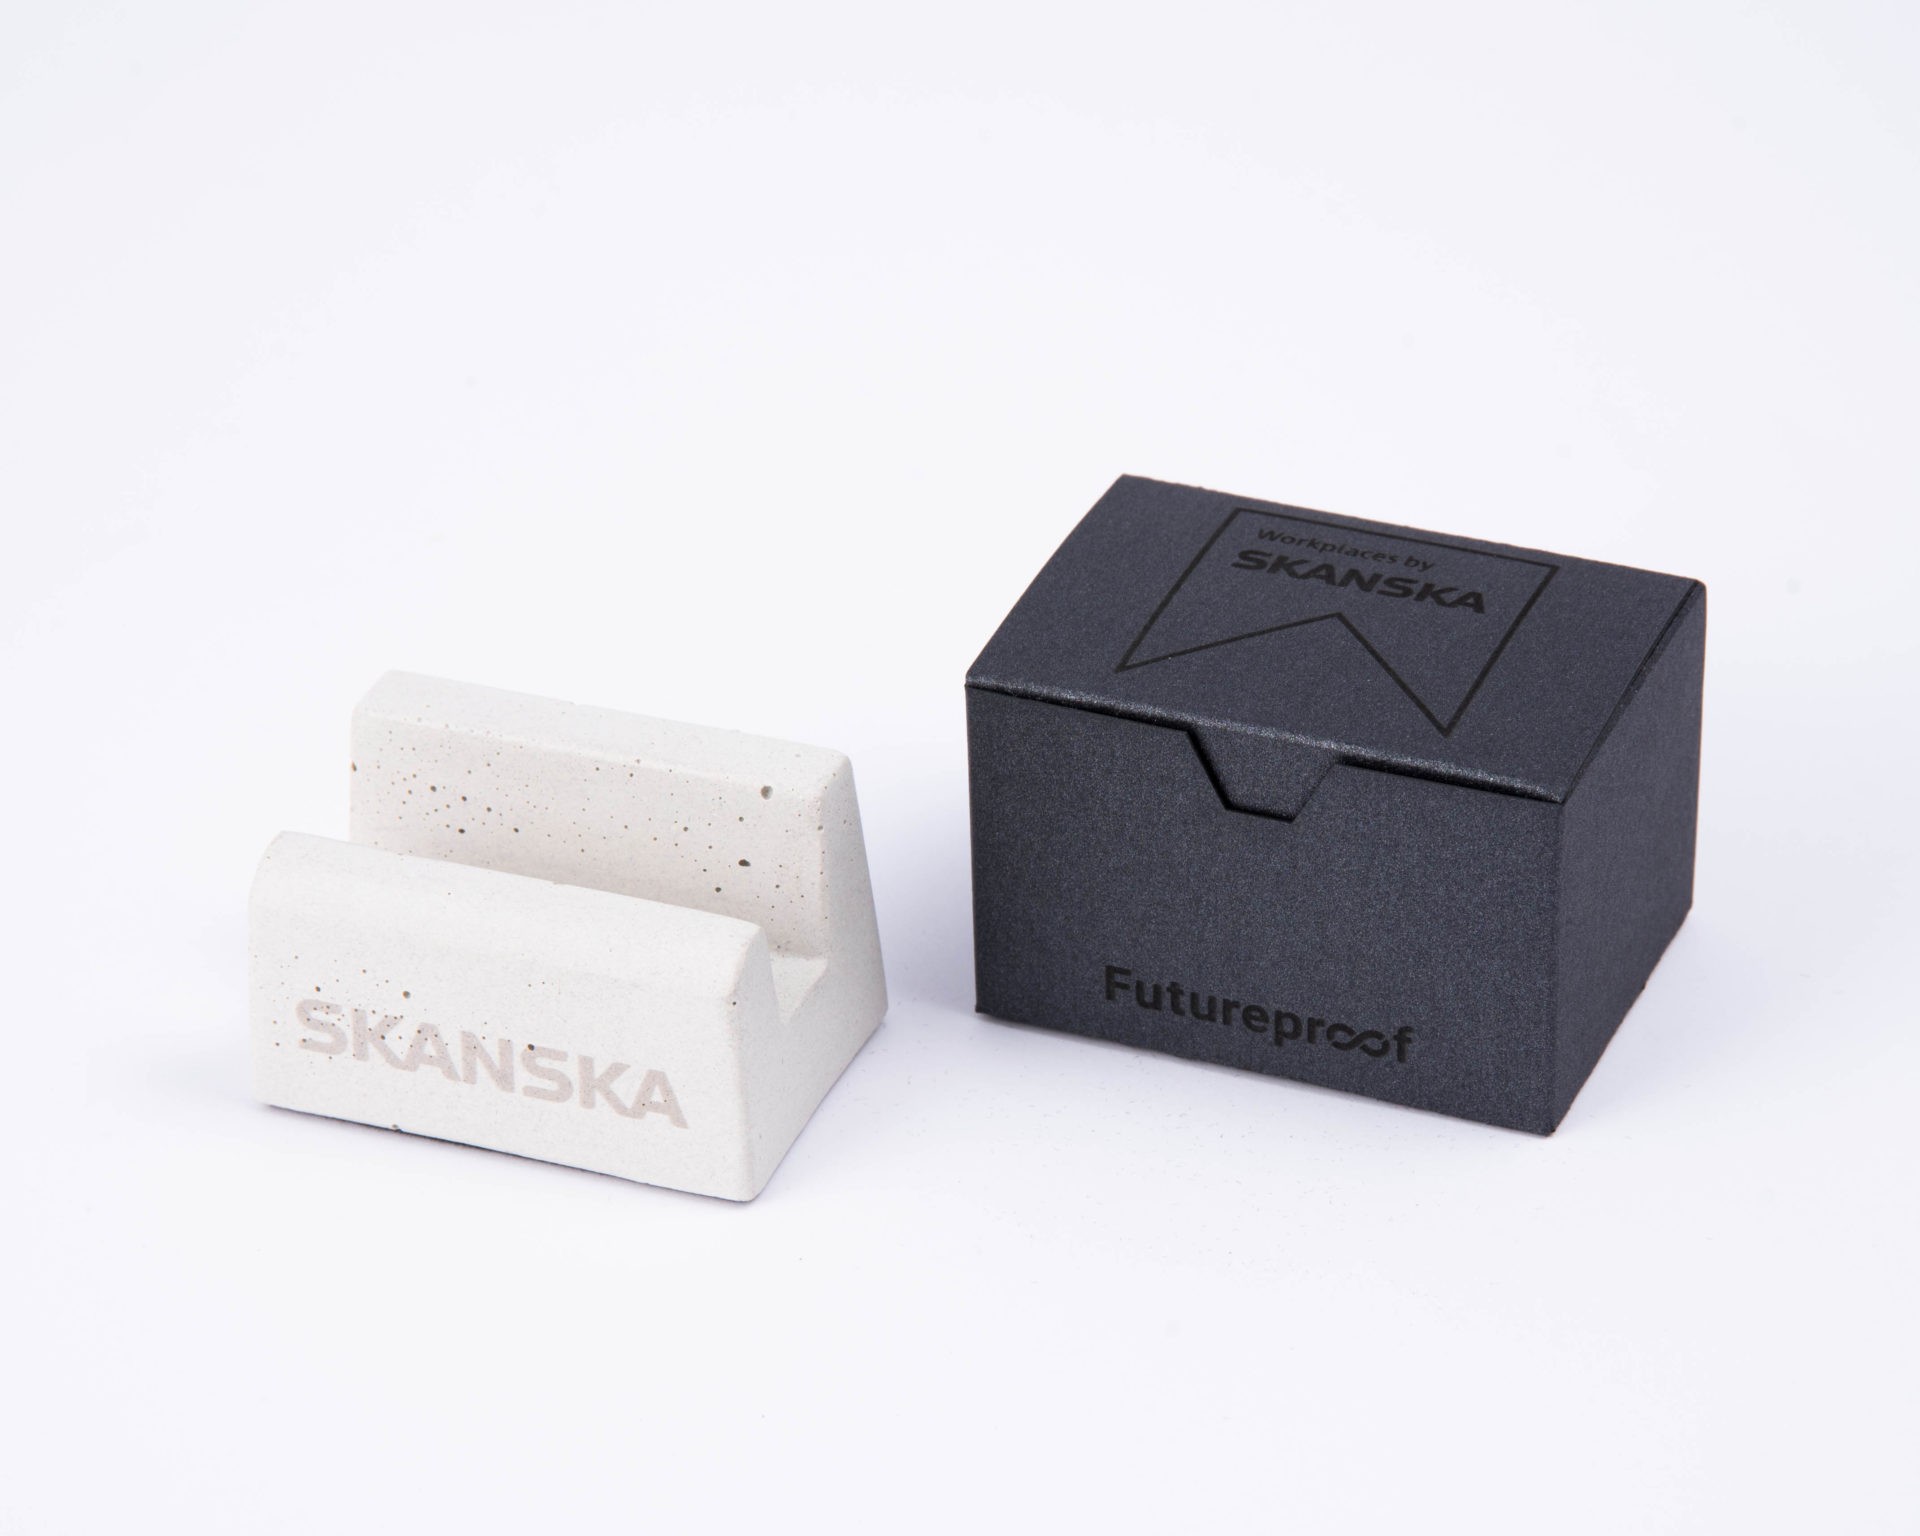 Personalized concrete corporate gift for Skanska